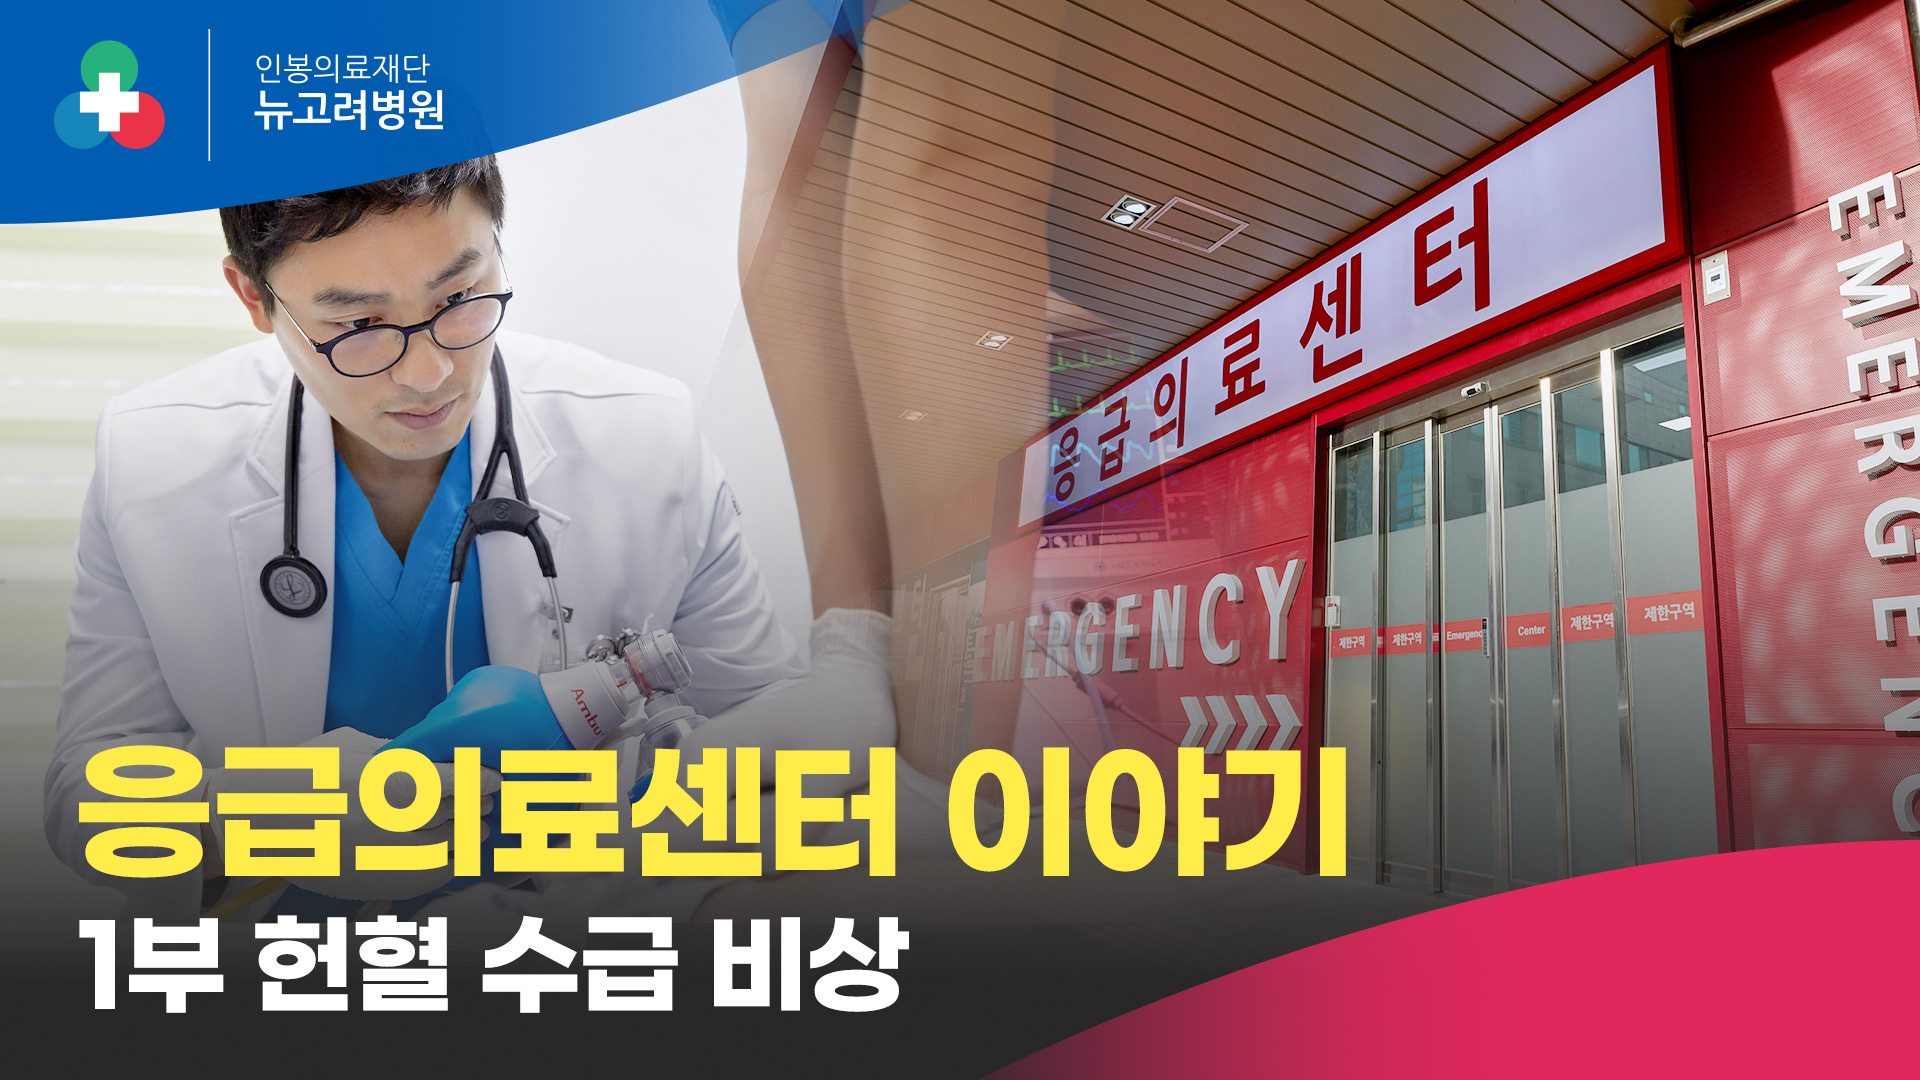 뉴고려병원 응급의료센터 이야기 (1부 - 헌혈 수급 비상)